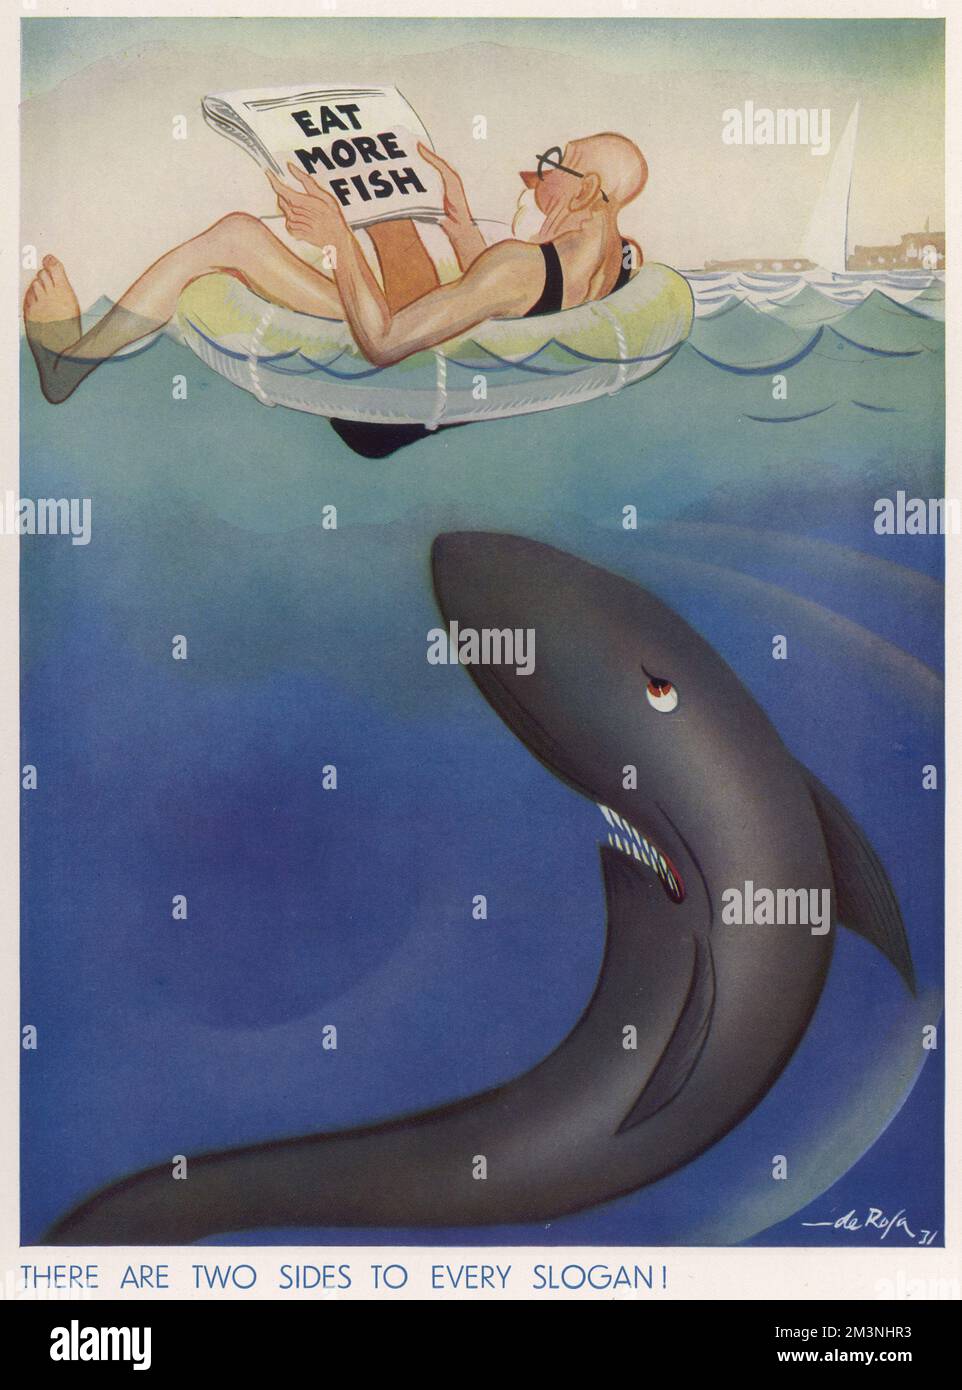 Eine humorvolle Illustration, die einen Gentleman zeigt, der sich entspannt, während er mit einem Gummiring im Meer herumtreibt, in seiner Zeitung liest, dass er mehr Fisch isst, völlig unwissend, dass ein riesiger Hai in der Nähe schwimmt und über ein Mittagessen nachdenkt. Datum: 1933 Stockfoto